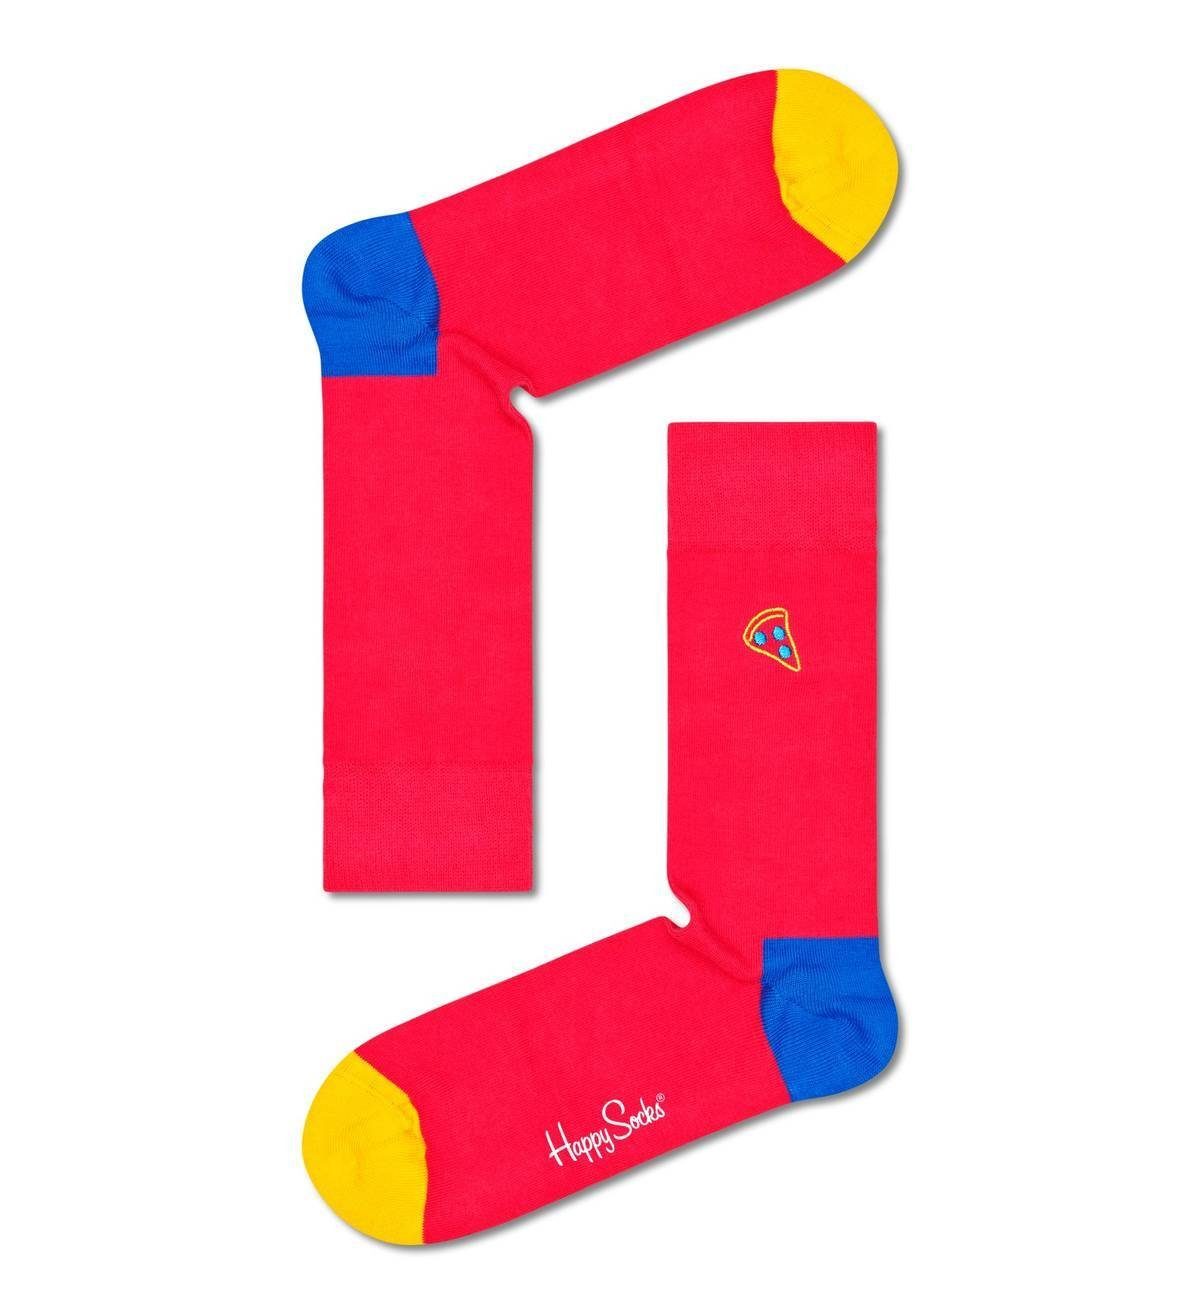 Wäsche/Bademode Socken Happy Socks Kurzsocken Unisex Socken, 7er Pack, Geschenkbox